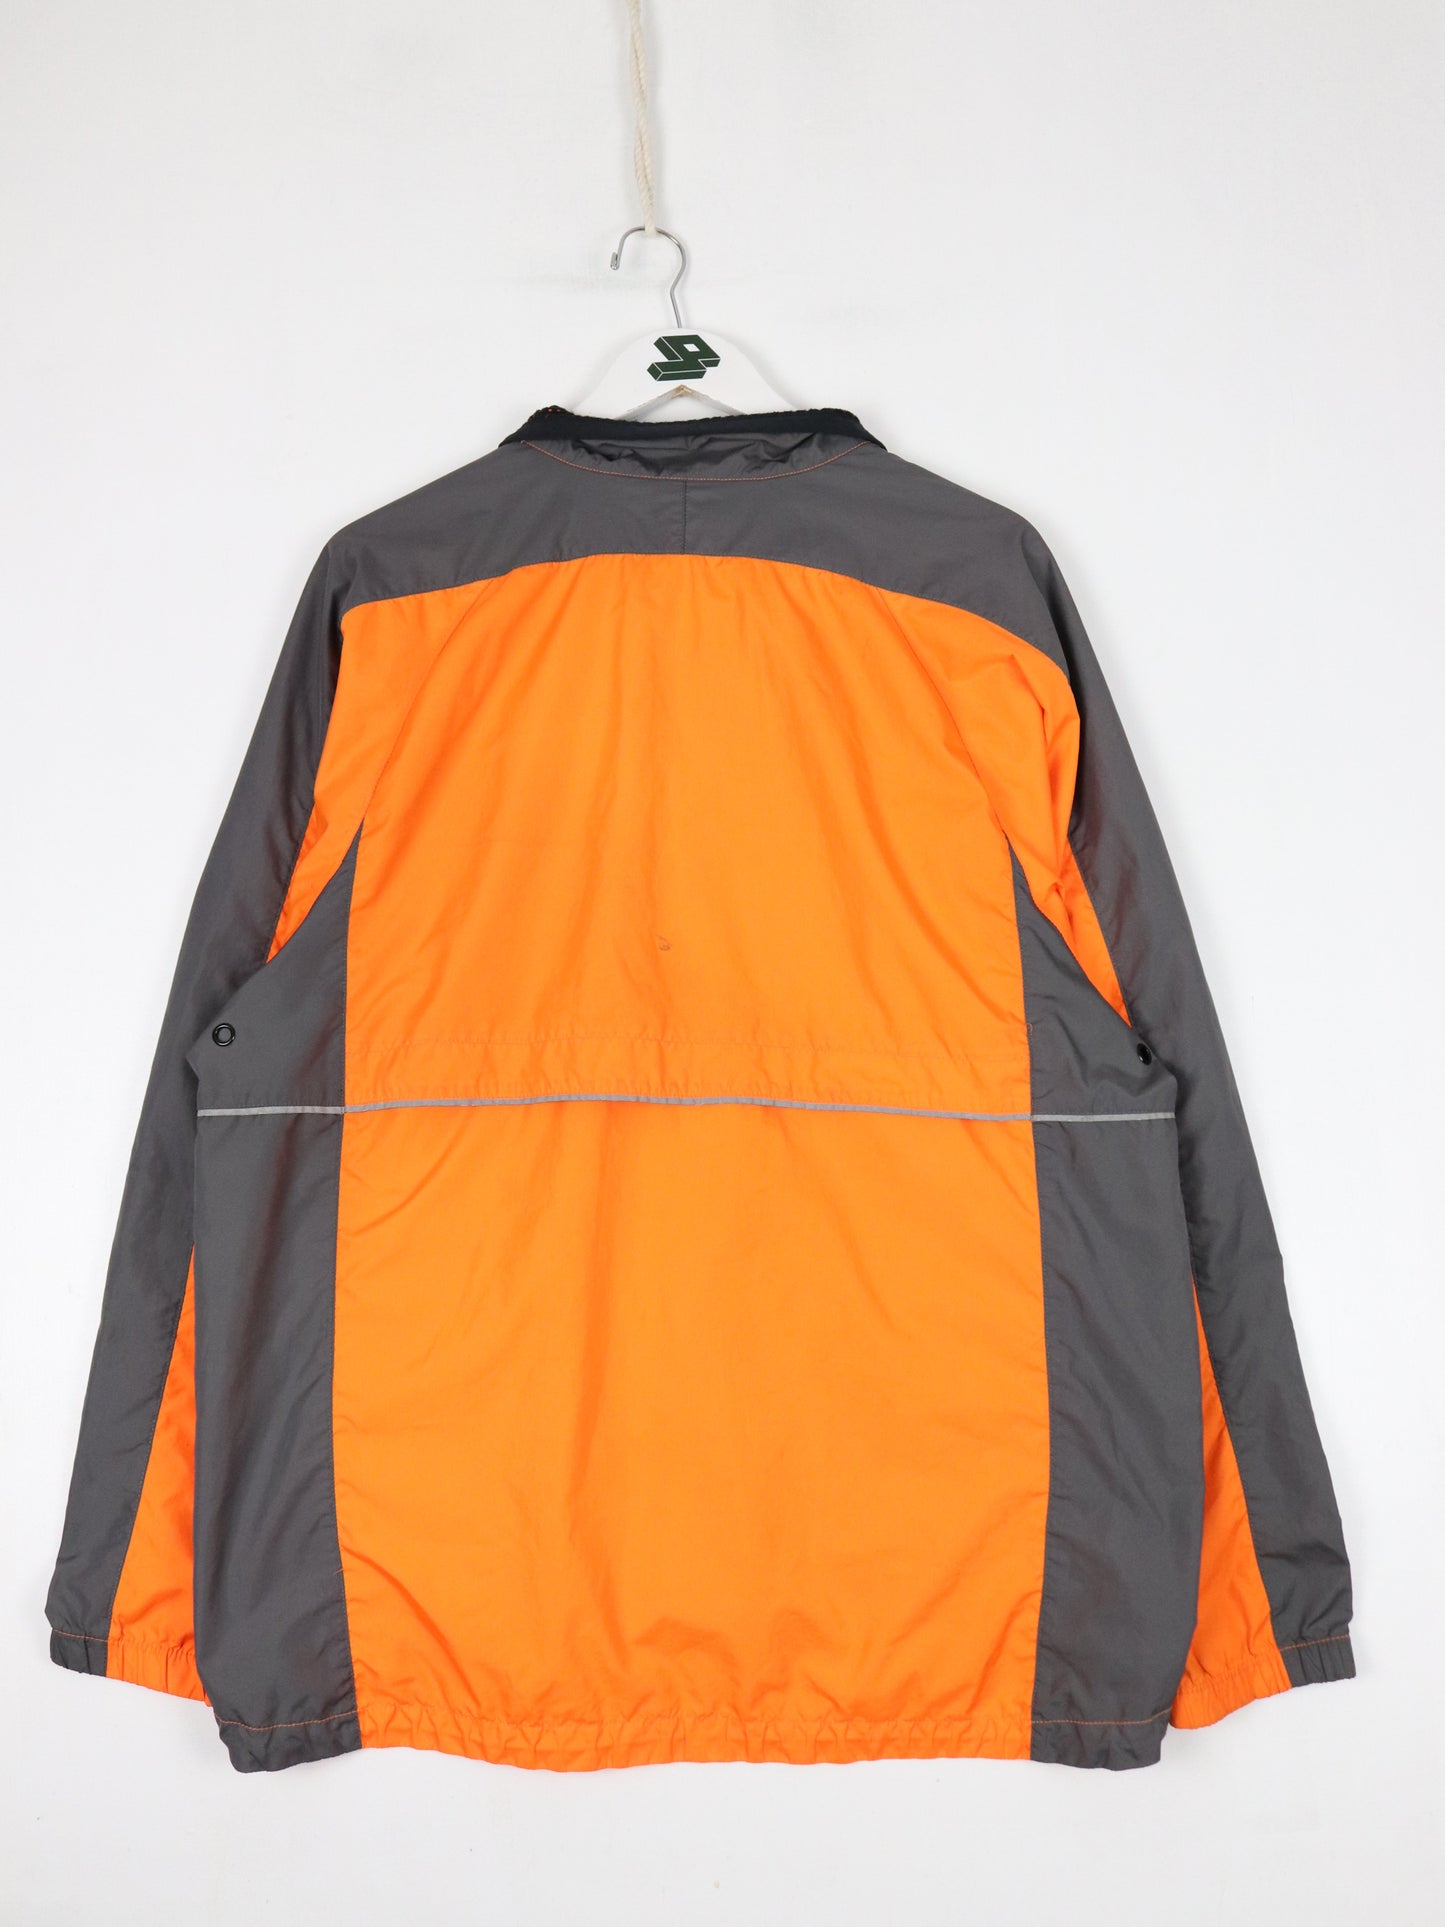 Vintage Nike Windbreaker Mens Medium Orange Motorola Jacket